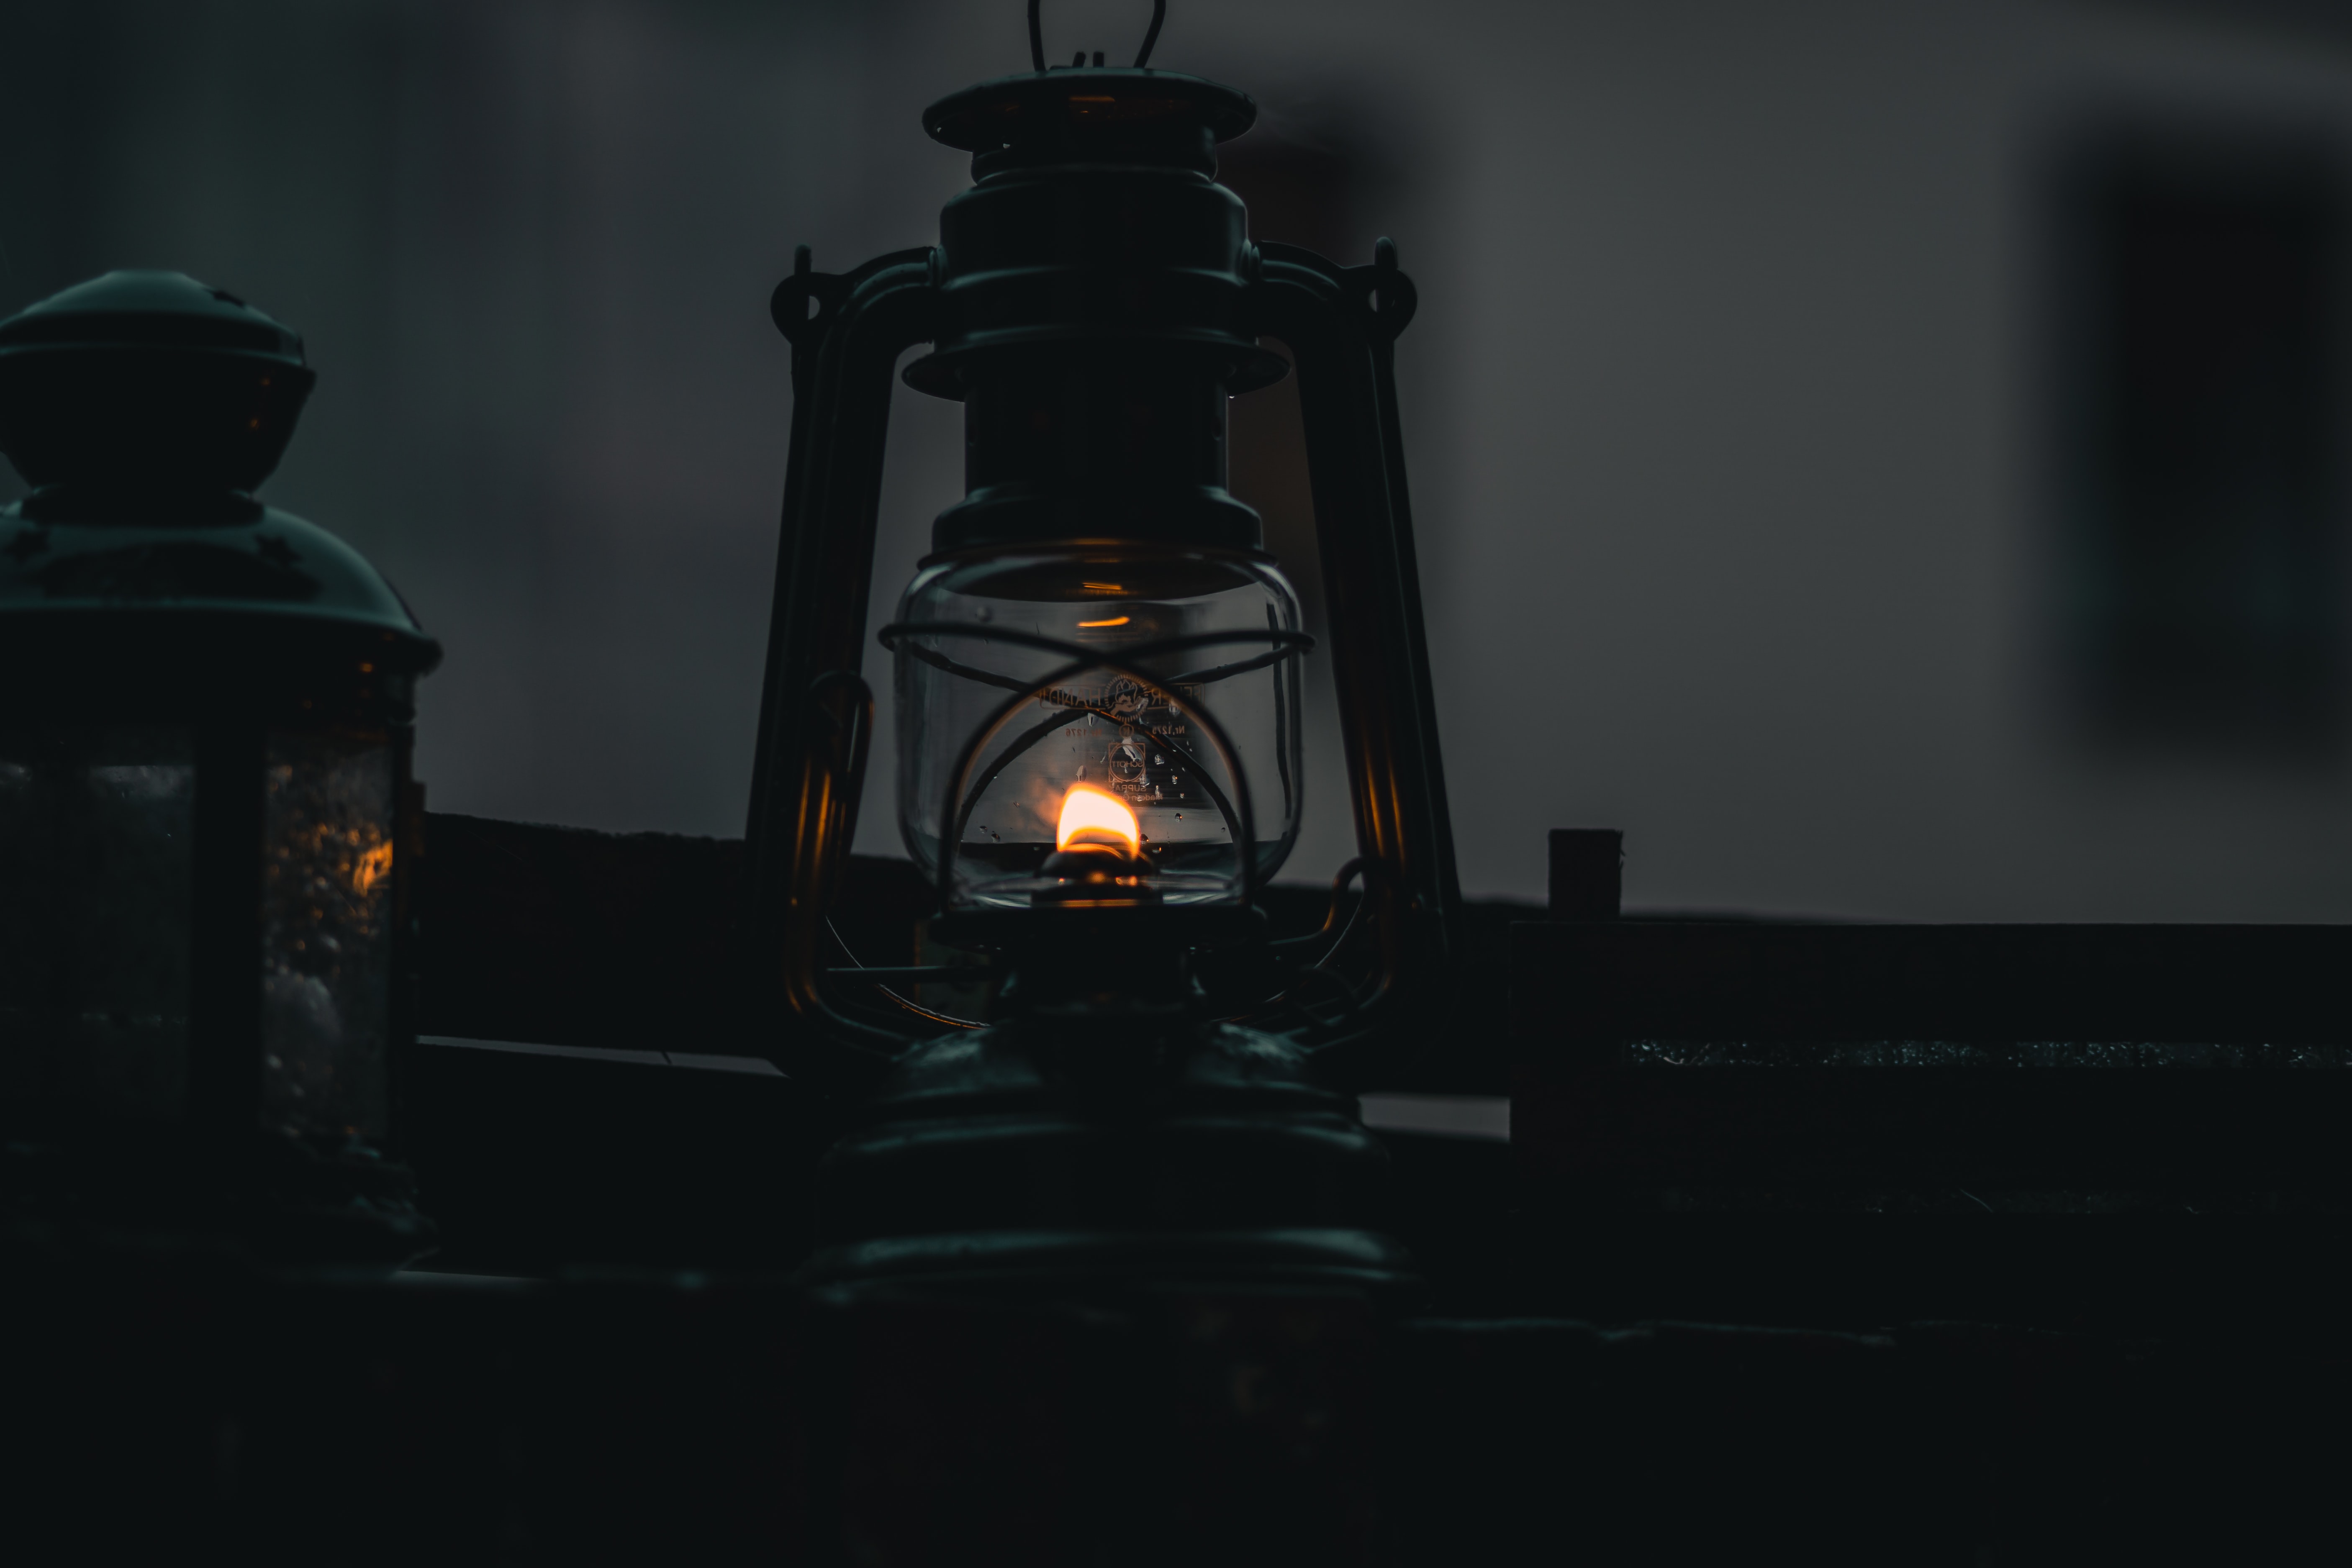 lamp, dark, metal, flame, fire, lantern, metallic High Definition image